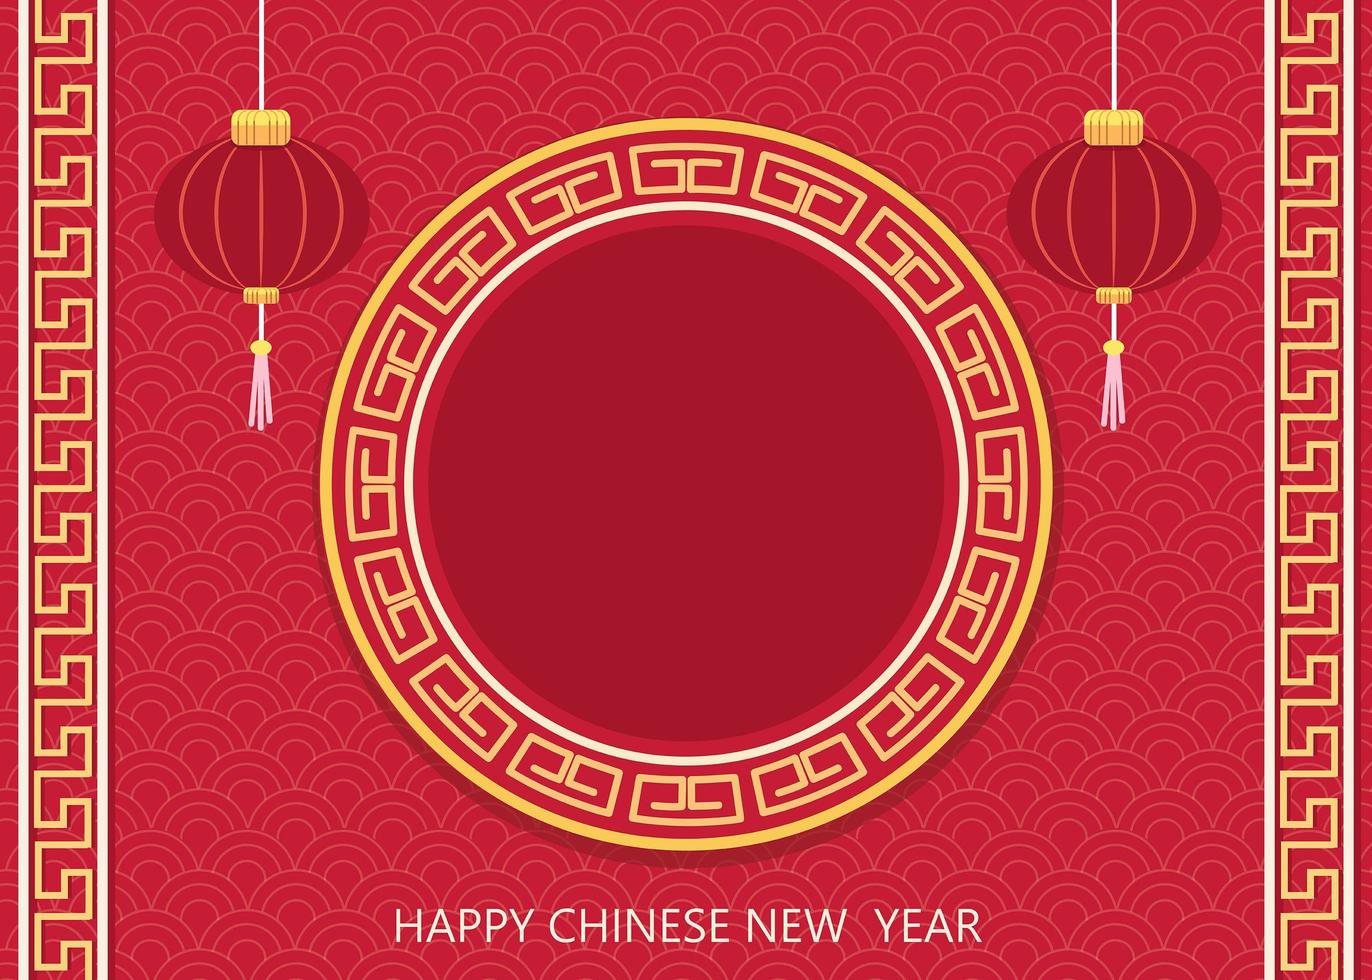 cartão de feliz ano novo chinês. fundo vermelho com lanternas asiáticas tradicionais para cartões, panfletos, convite, cartazes, brochura, banners, calendário. vetor